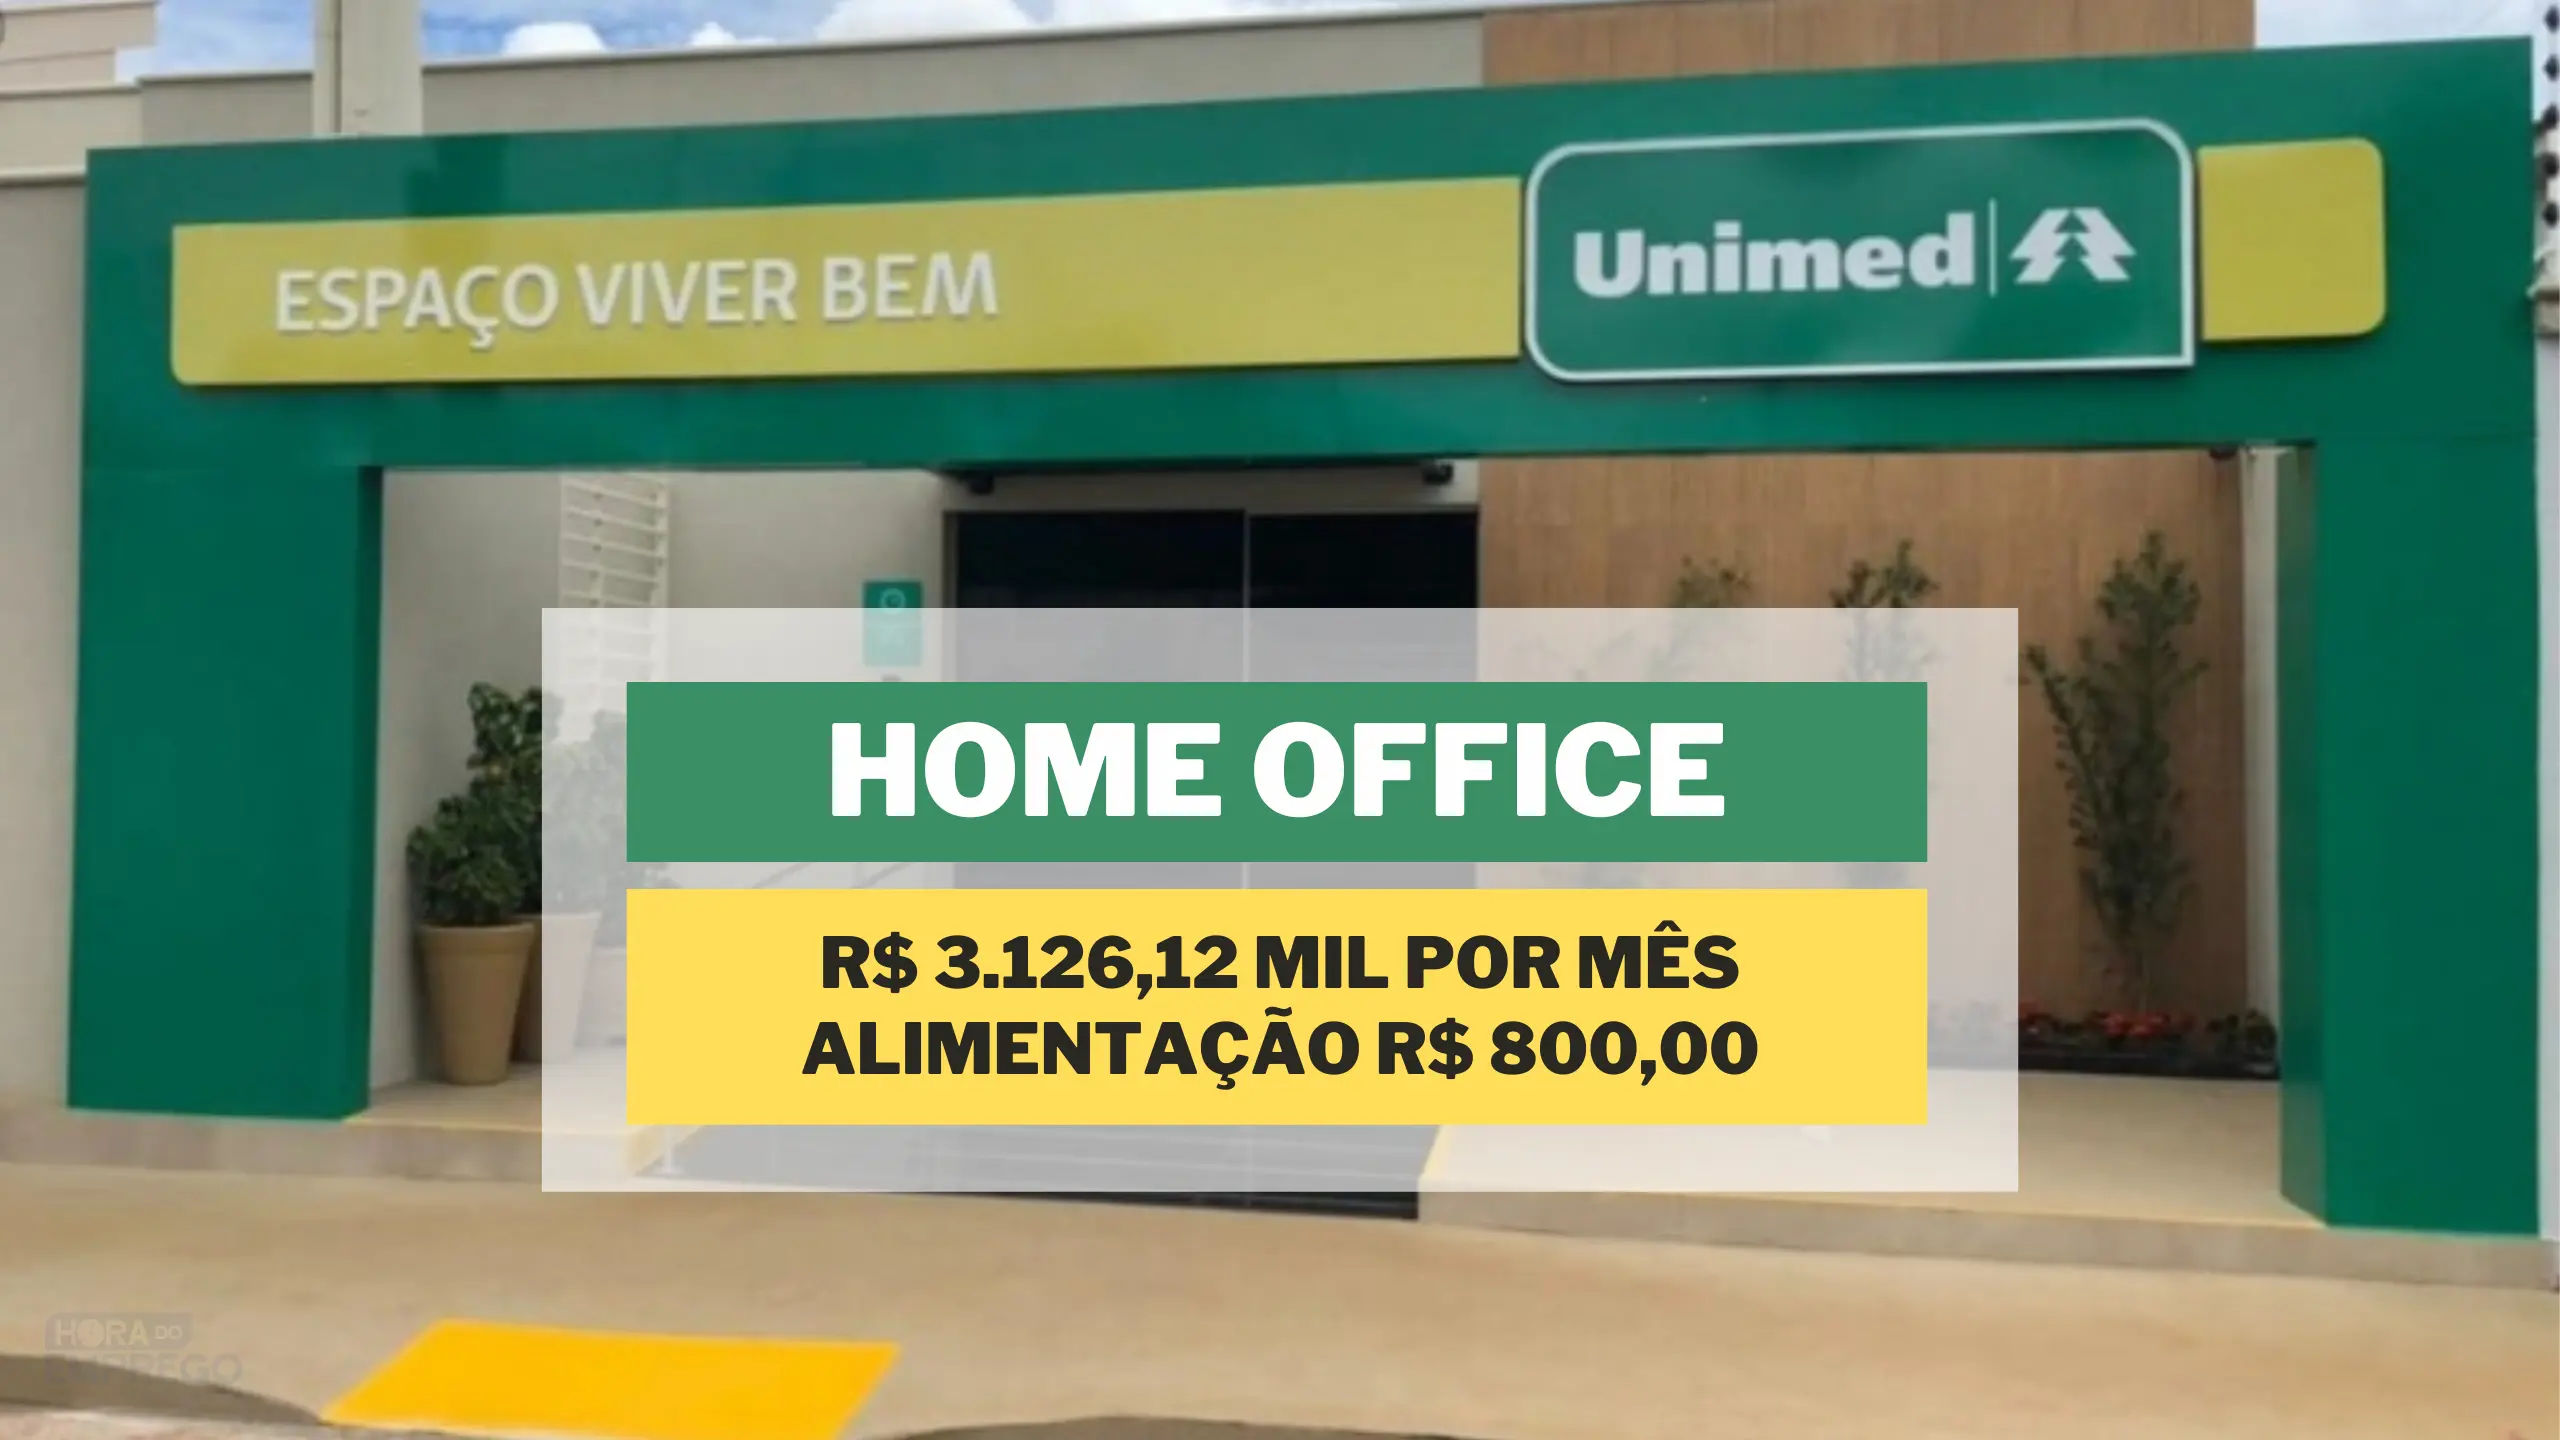 Unimed abriu vagas HOME OFFICE com salário de R$ 3.126,12 mil e Alimentação R$ 800,00